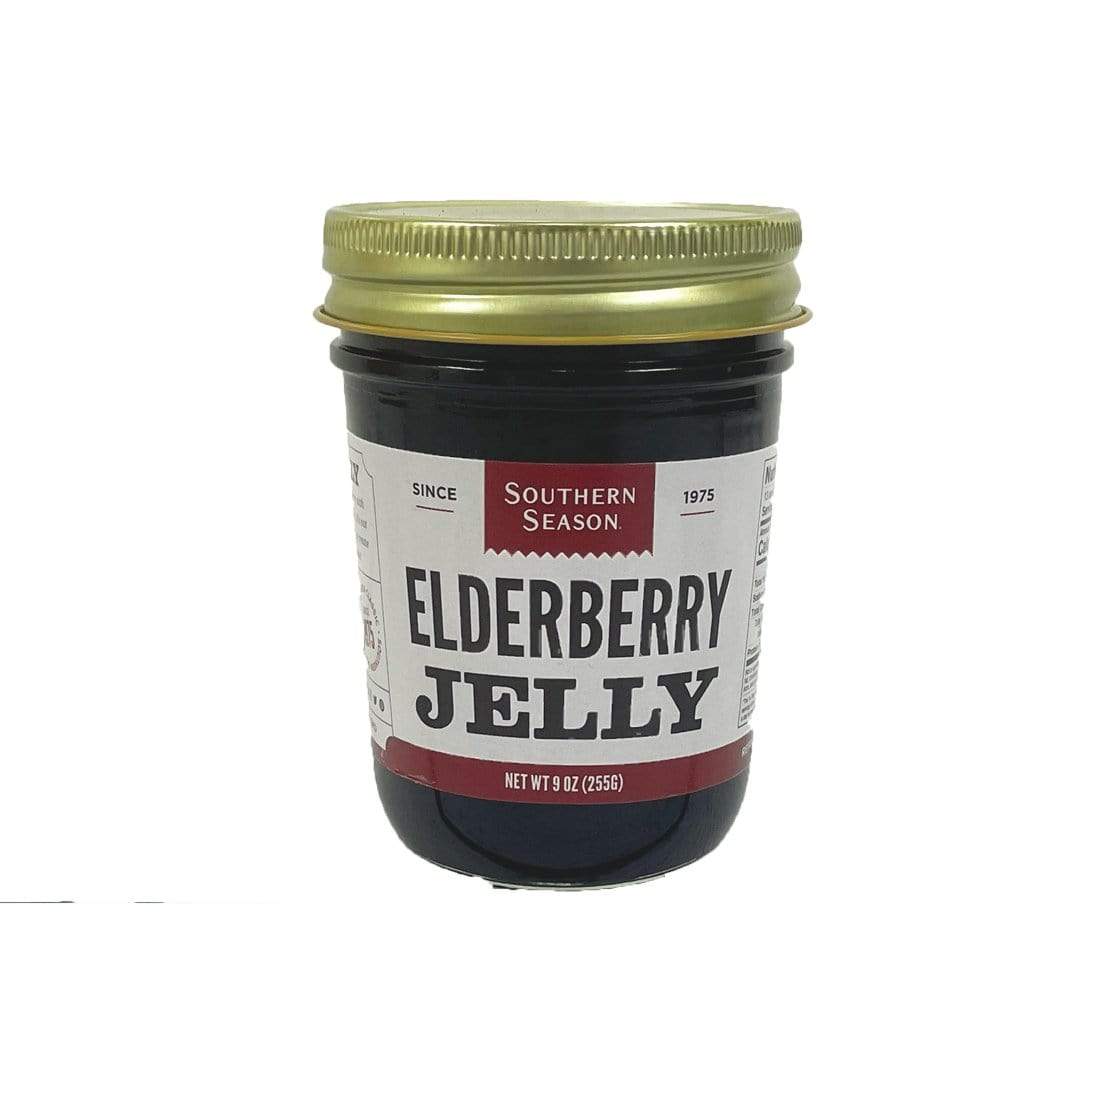 Southern Season Jam Southern Season Elderberry Jelly 9 oz